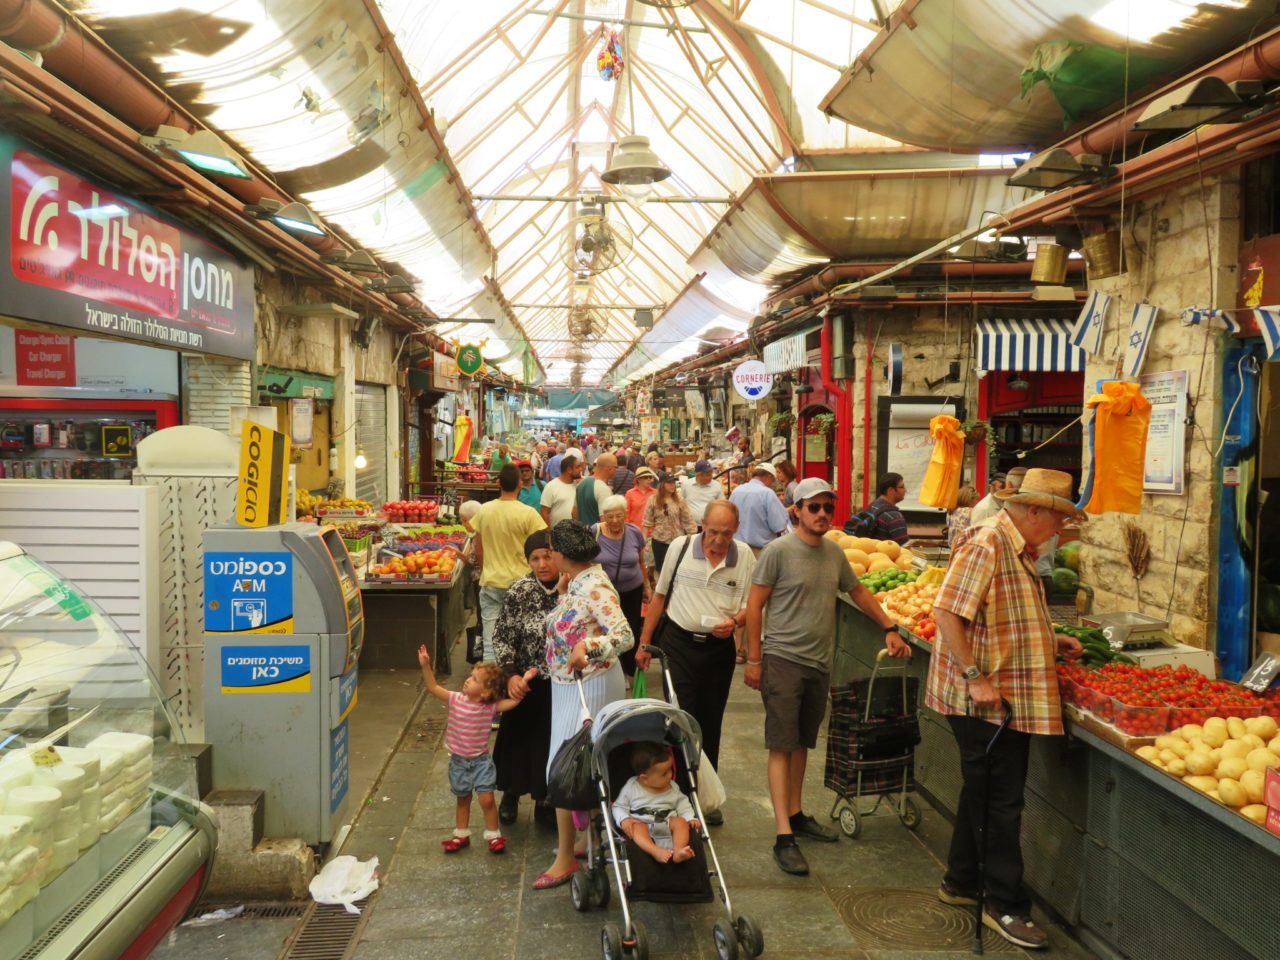 The joys of walking Jerusalem - The Mahane Yehuda market